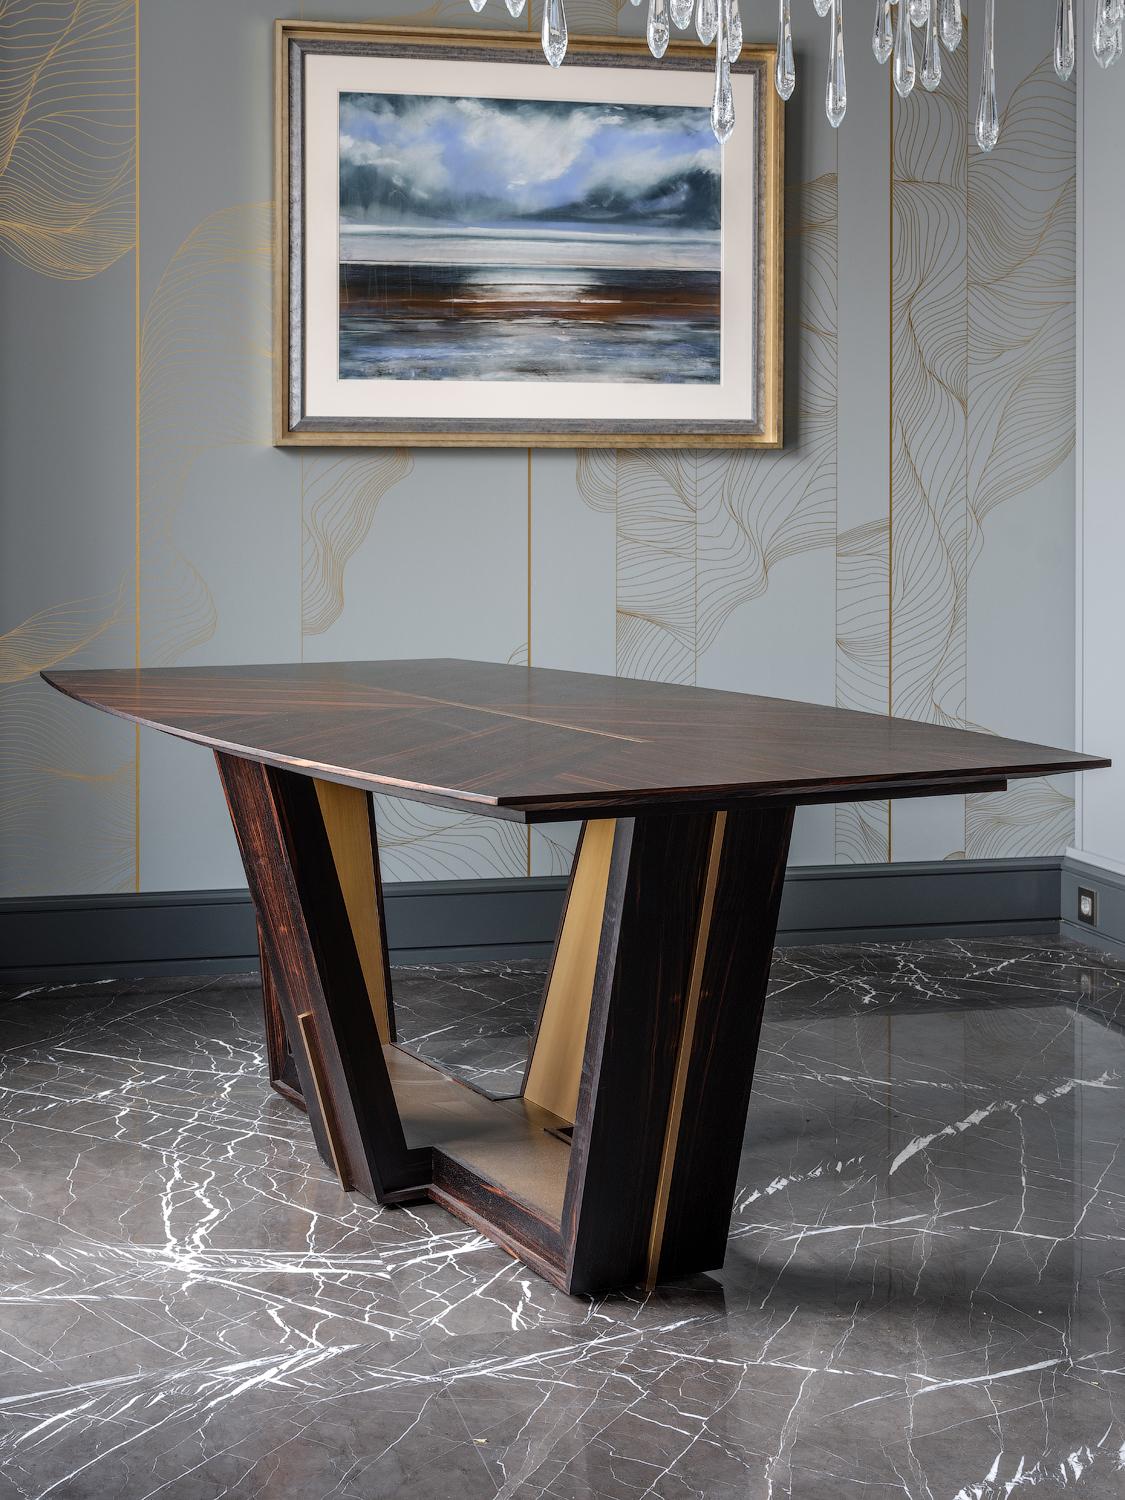 La table Theemin est destinée aux amateurs de formes ergonomiques et de style minimaliste. La simplicité de son design en fait un ajout discret à un espace et sa combinaison de bois et de métal souligne son esthétique fonctionnelle. 

*Finitions